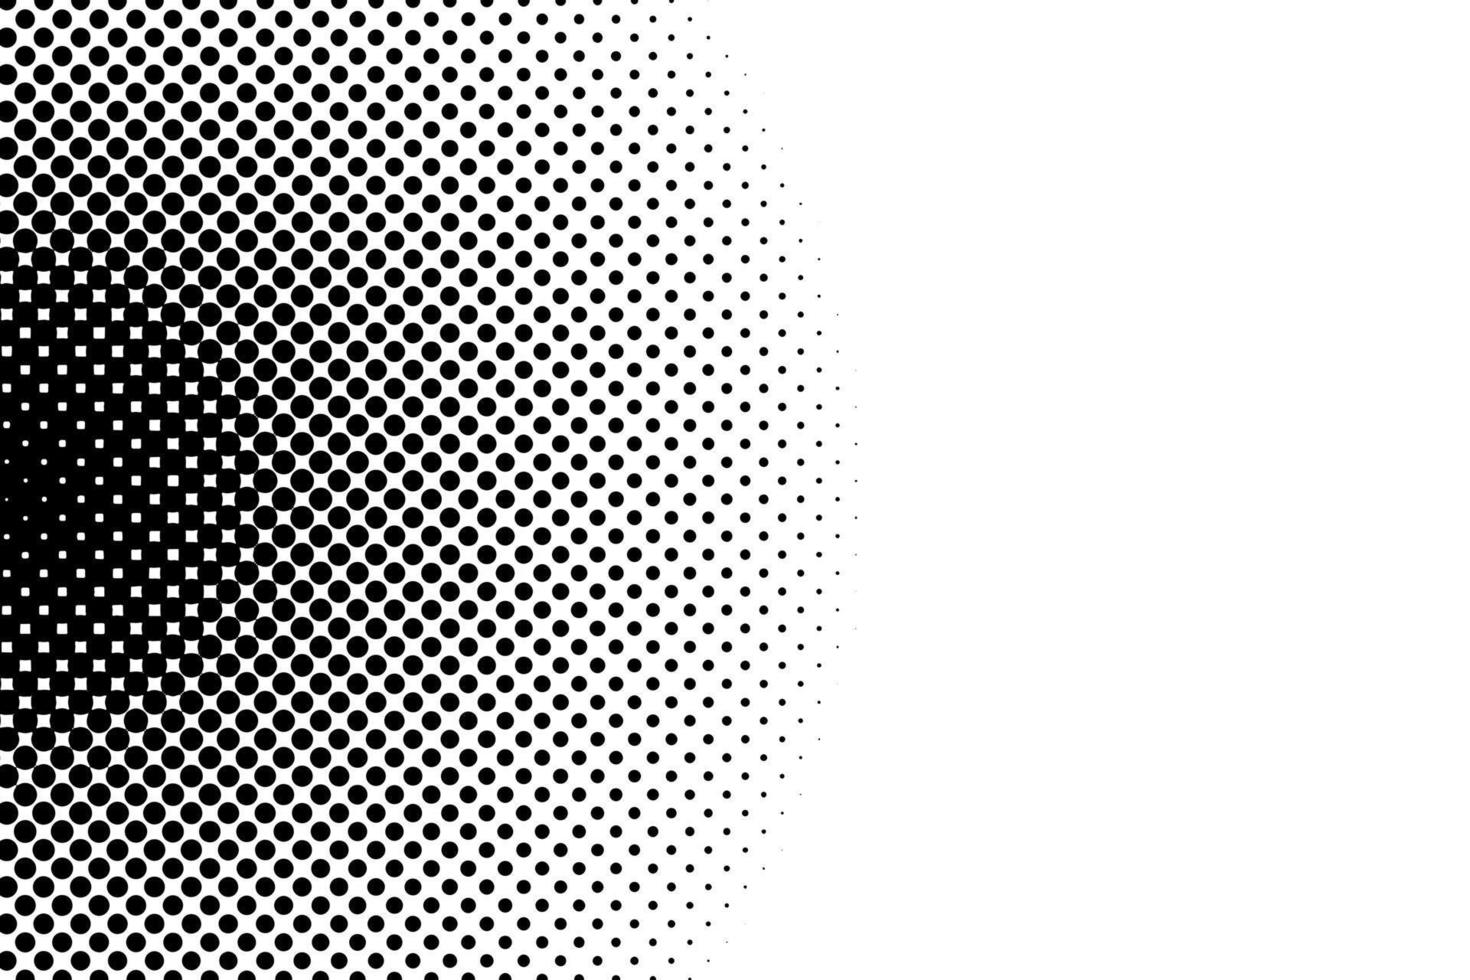 zwart wit knal kunst achtergrond met halftone dots in retro grappig stijl. vector illustratie.